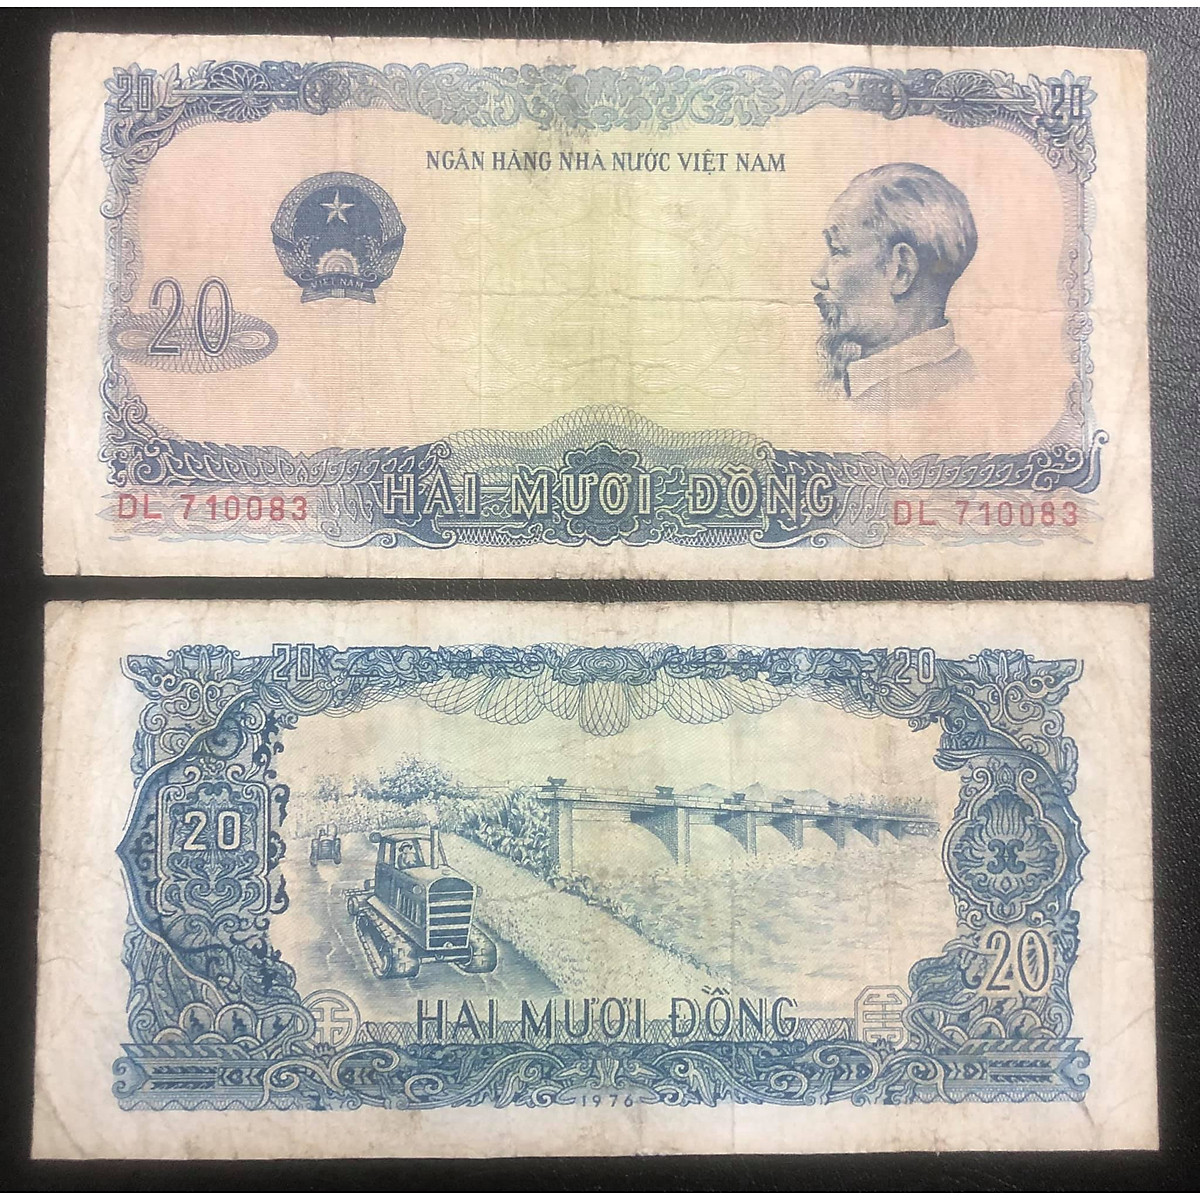 Tiền Việt Nam xưa, tờ tiền 20 đồng phát hành năm 1976 hình ảnh đập ...